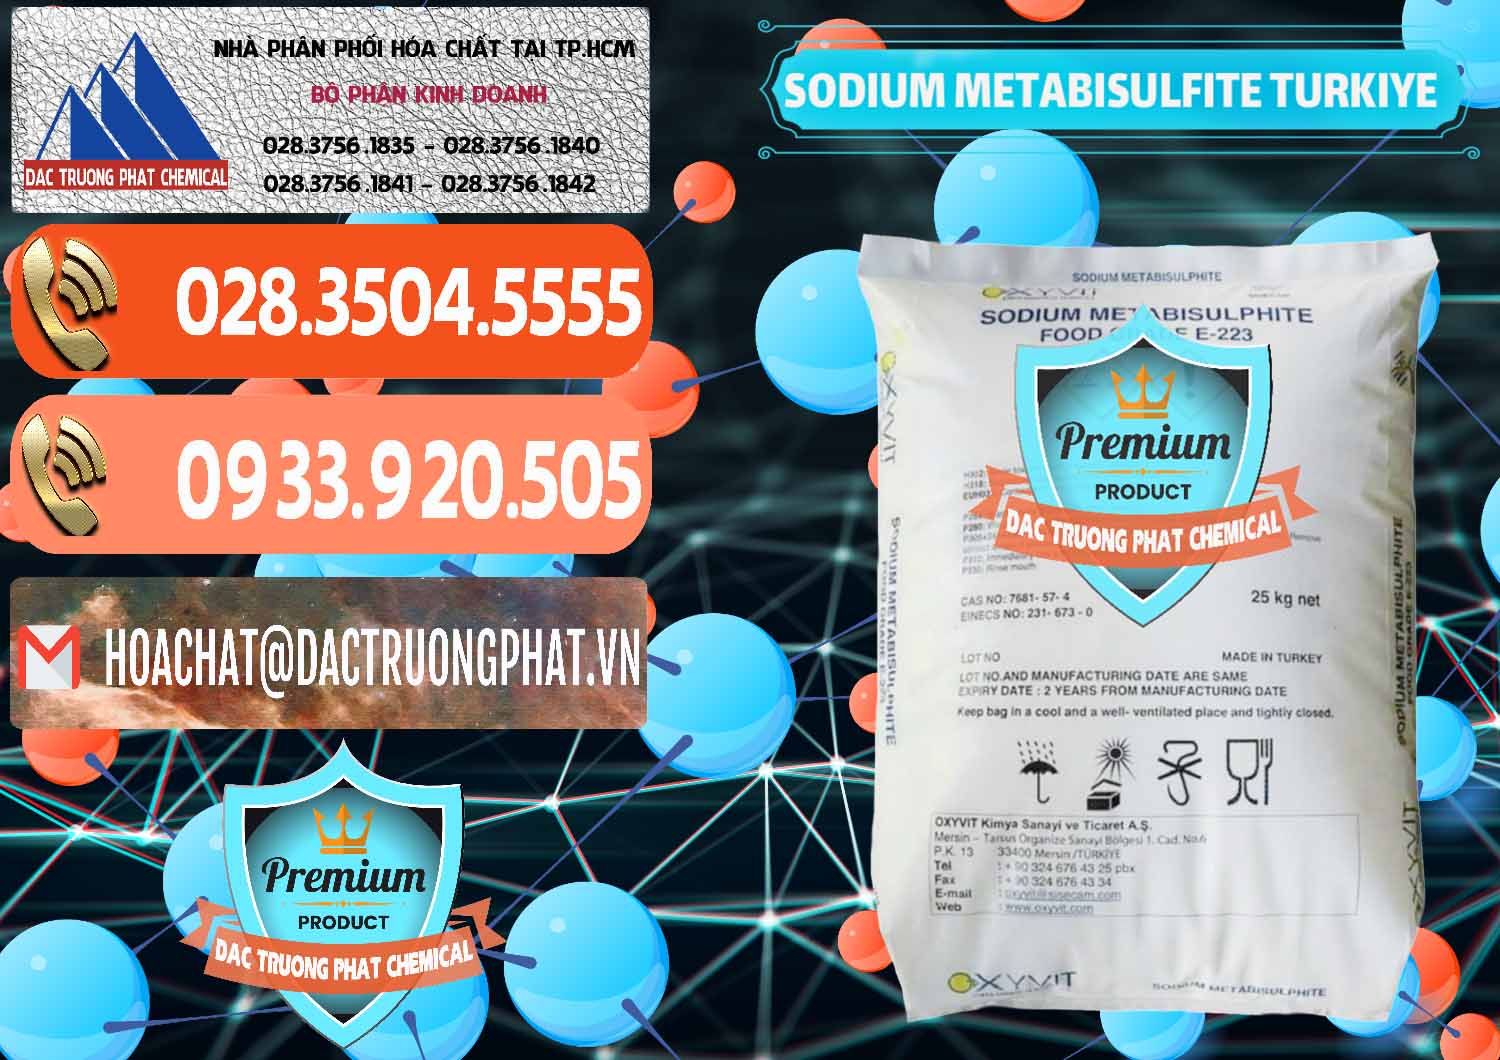 Cty chuyên phân phối - bán Sodium Metabisulfite - NA2S2O5 Food Grade E-223 Thổ Nhĩ Kỳ Turkey - 0413 - Kinh doanh & cung cấp hóa chất tại TP.HCM - hoachatmientay.com